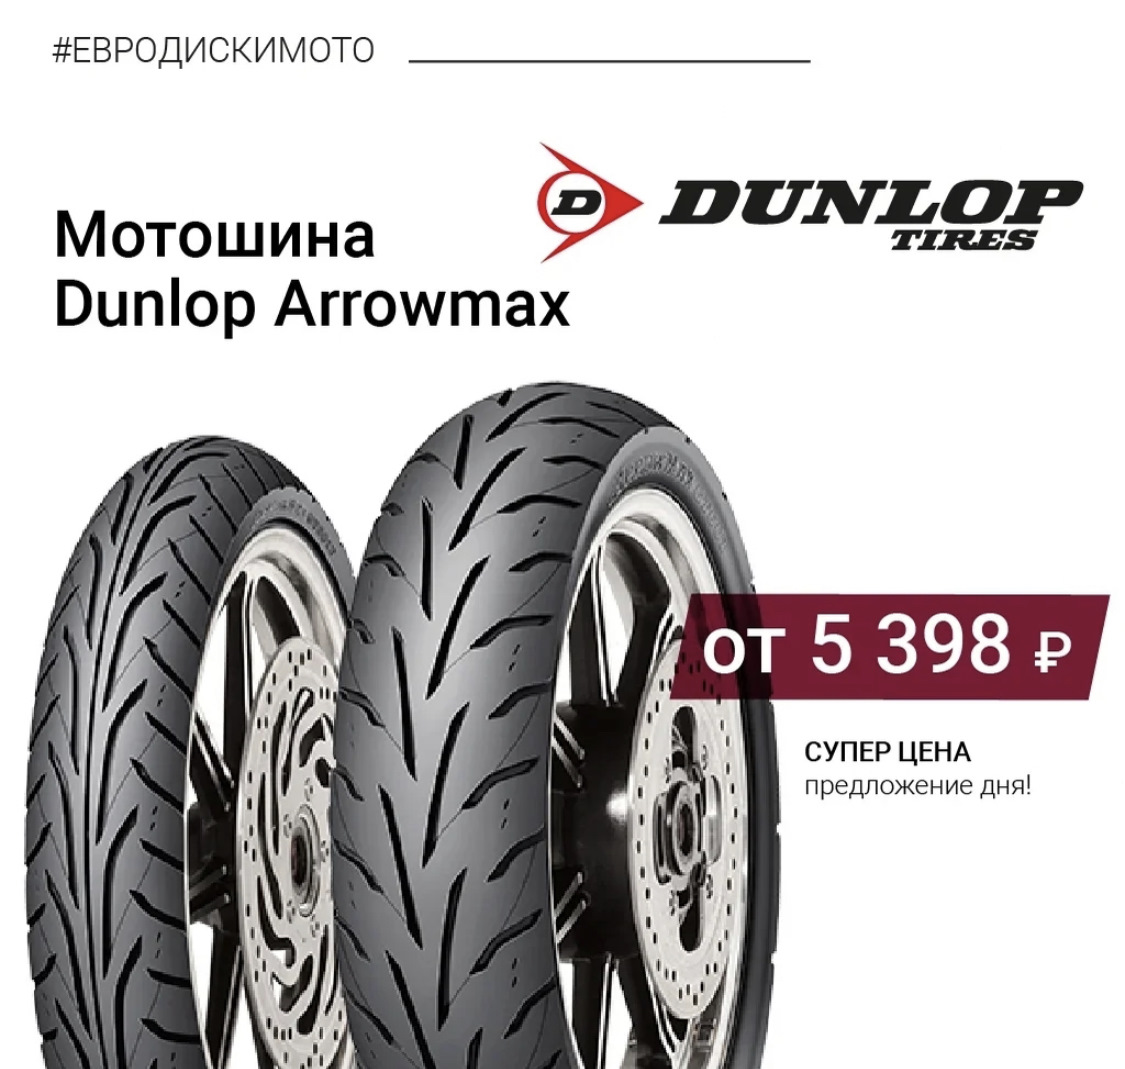 Евро диски интернет отзывы. Dunlop Arrowmax gt501. Dunlop Arrowmax. Euro-diski. Arrowmax as-13.